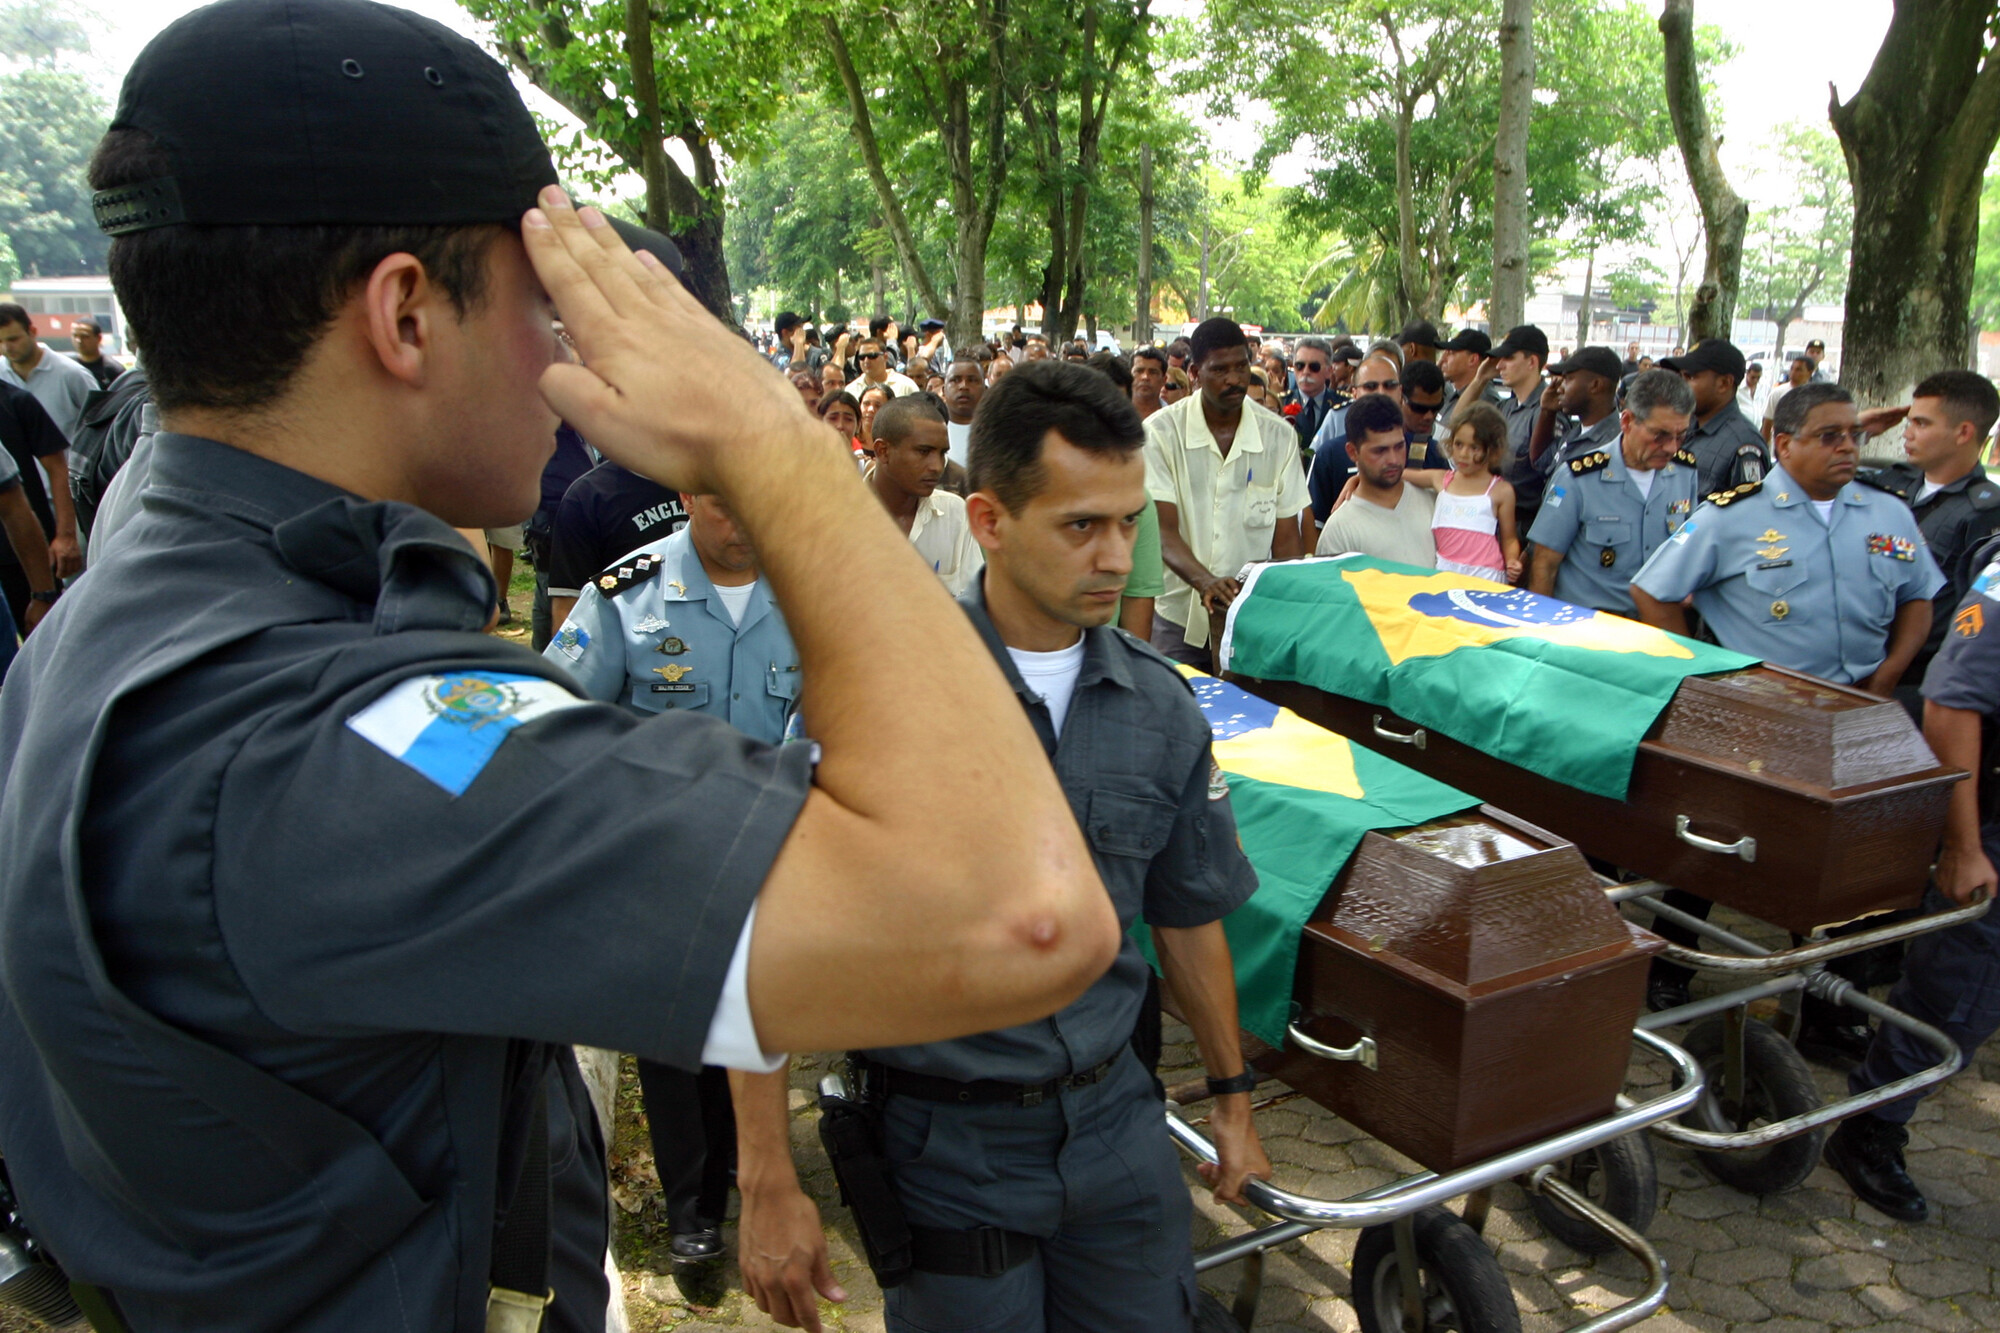 Rio já tem 50 policiais assassinados neste ano